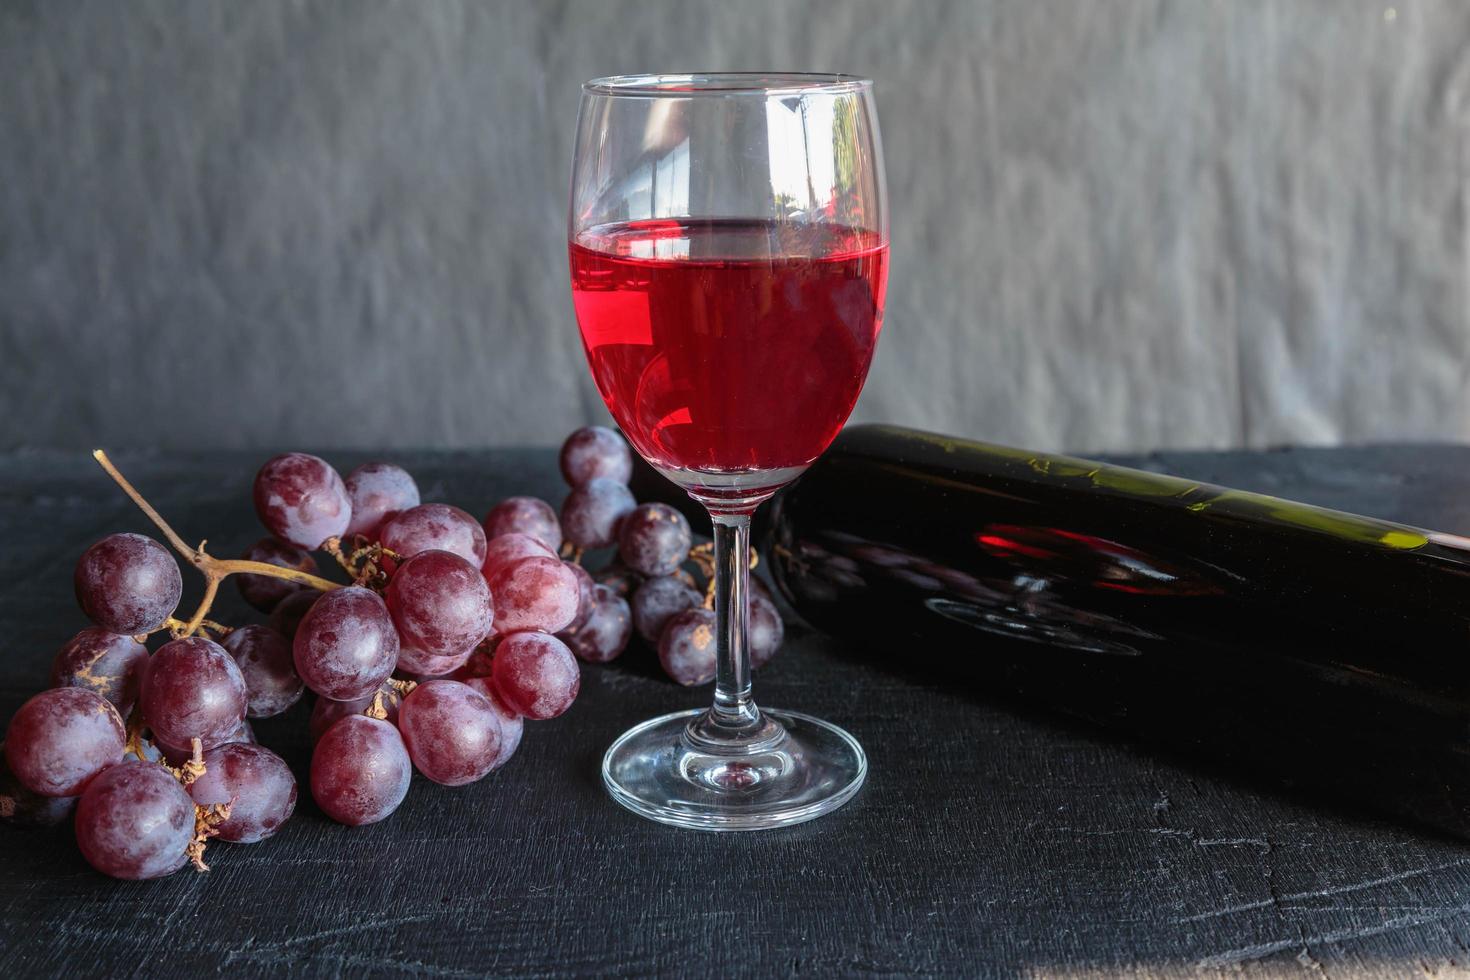 vino rosso e bottiglia di vino con uva su sfondo nero foto